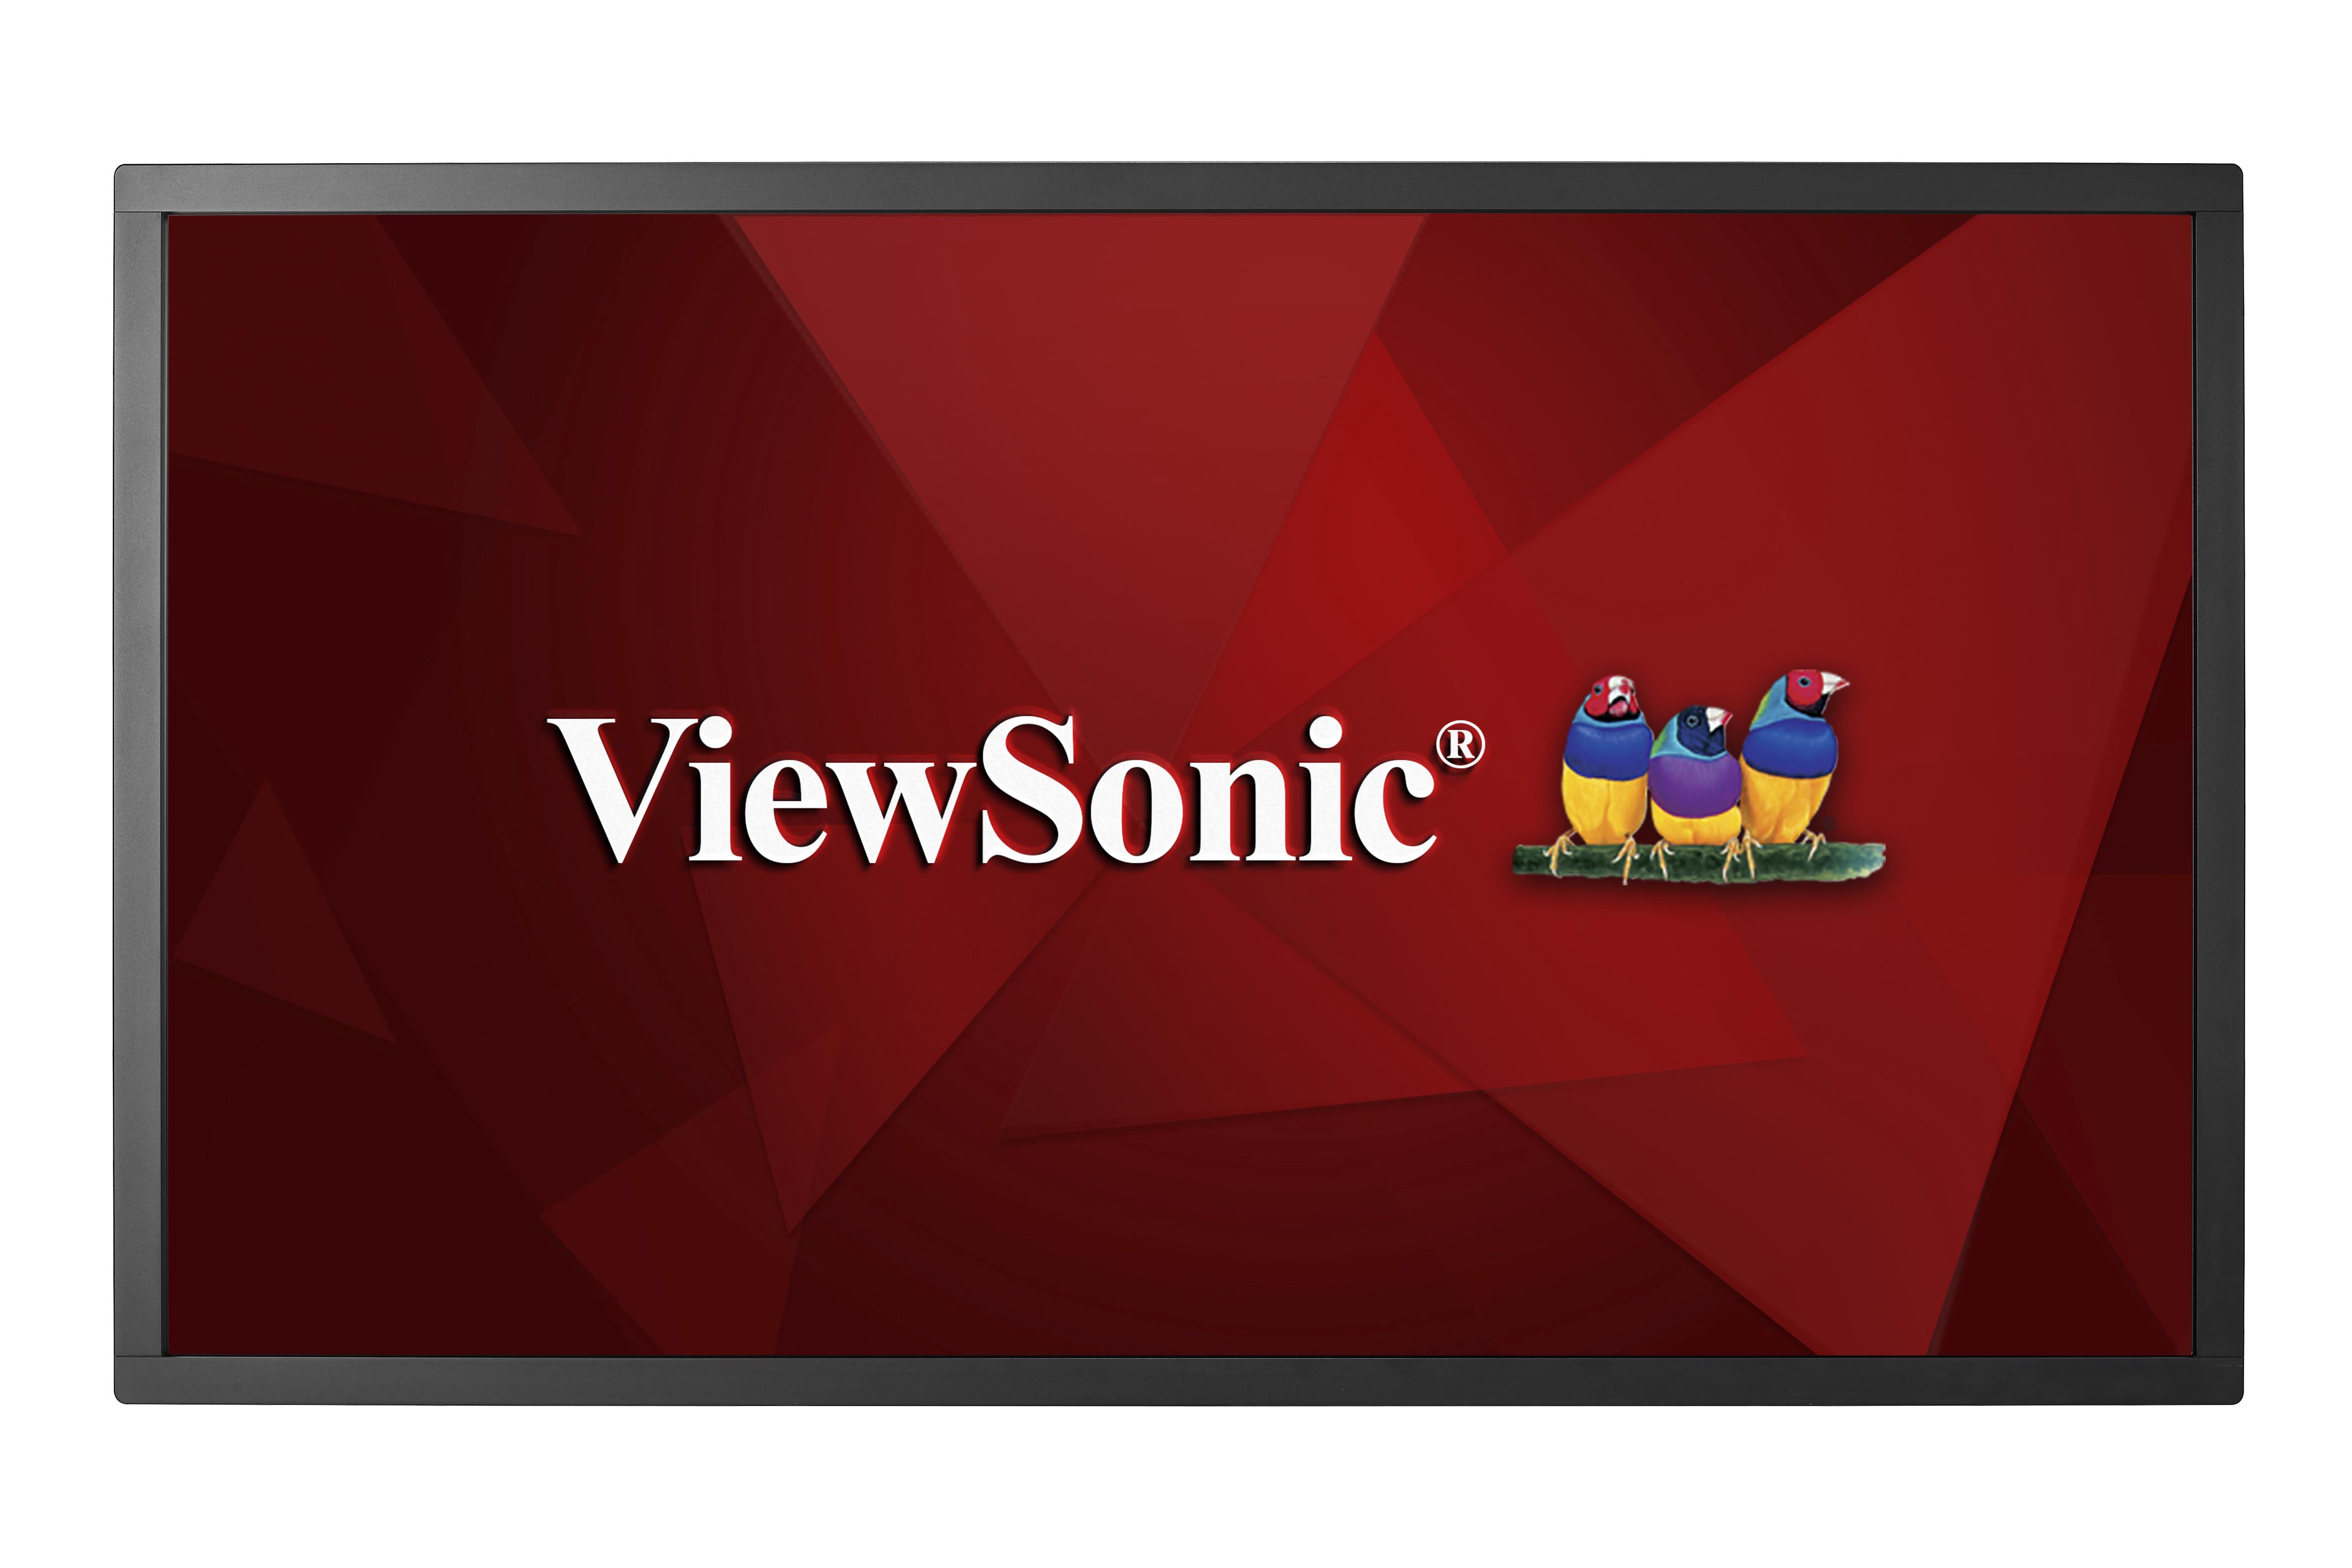 ViewSonic CDM5500T 55